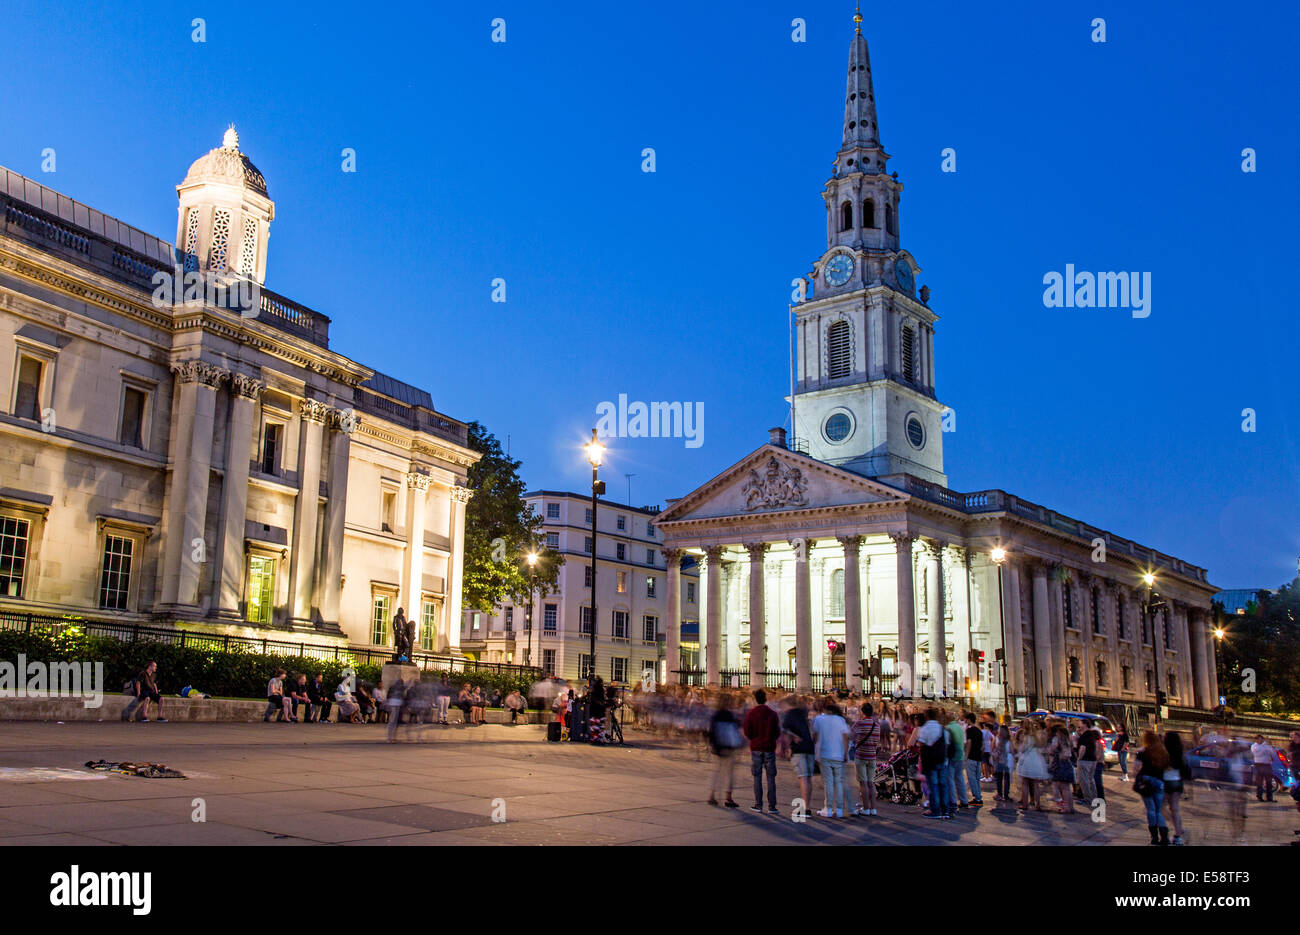 St. Martins In den Bereichen Trafalgar Square Nacht London Vereinigtes Königreich Stockfoto